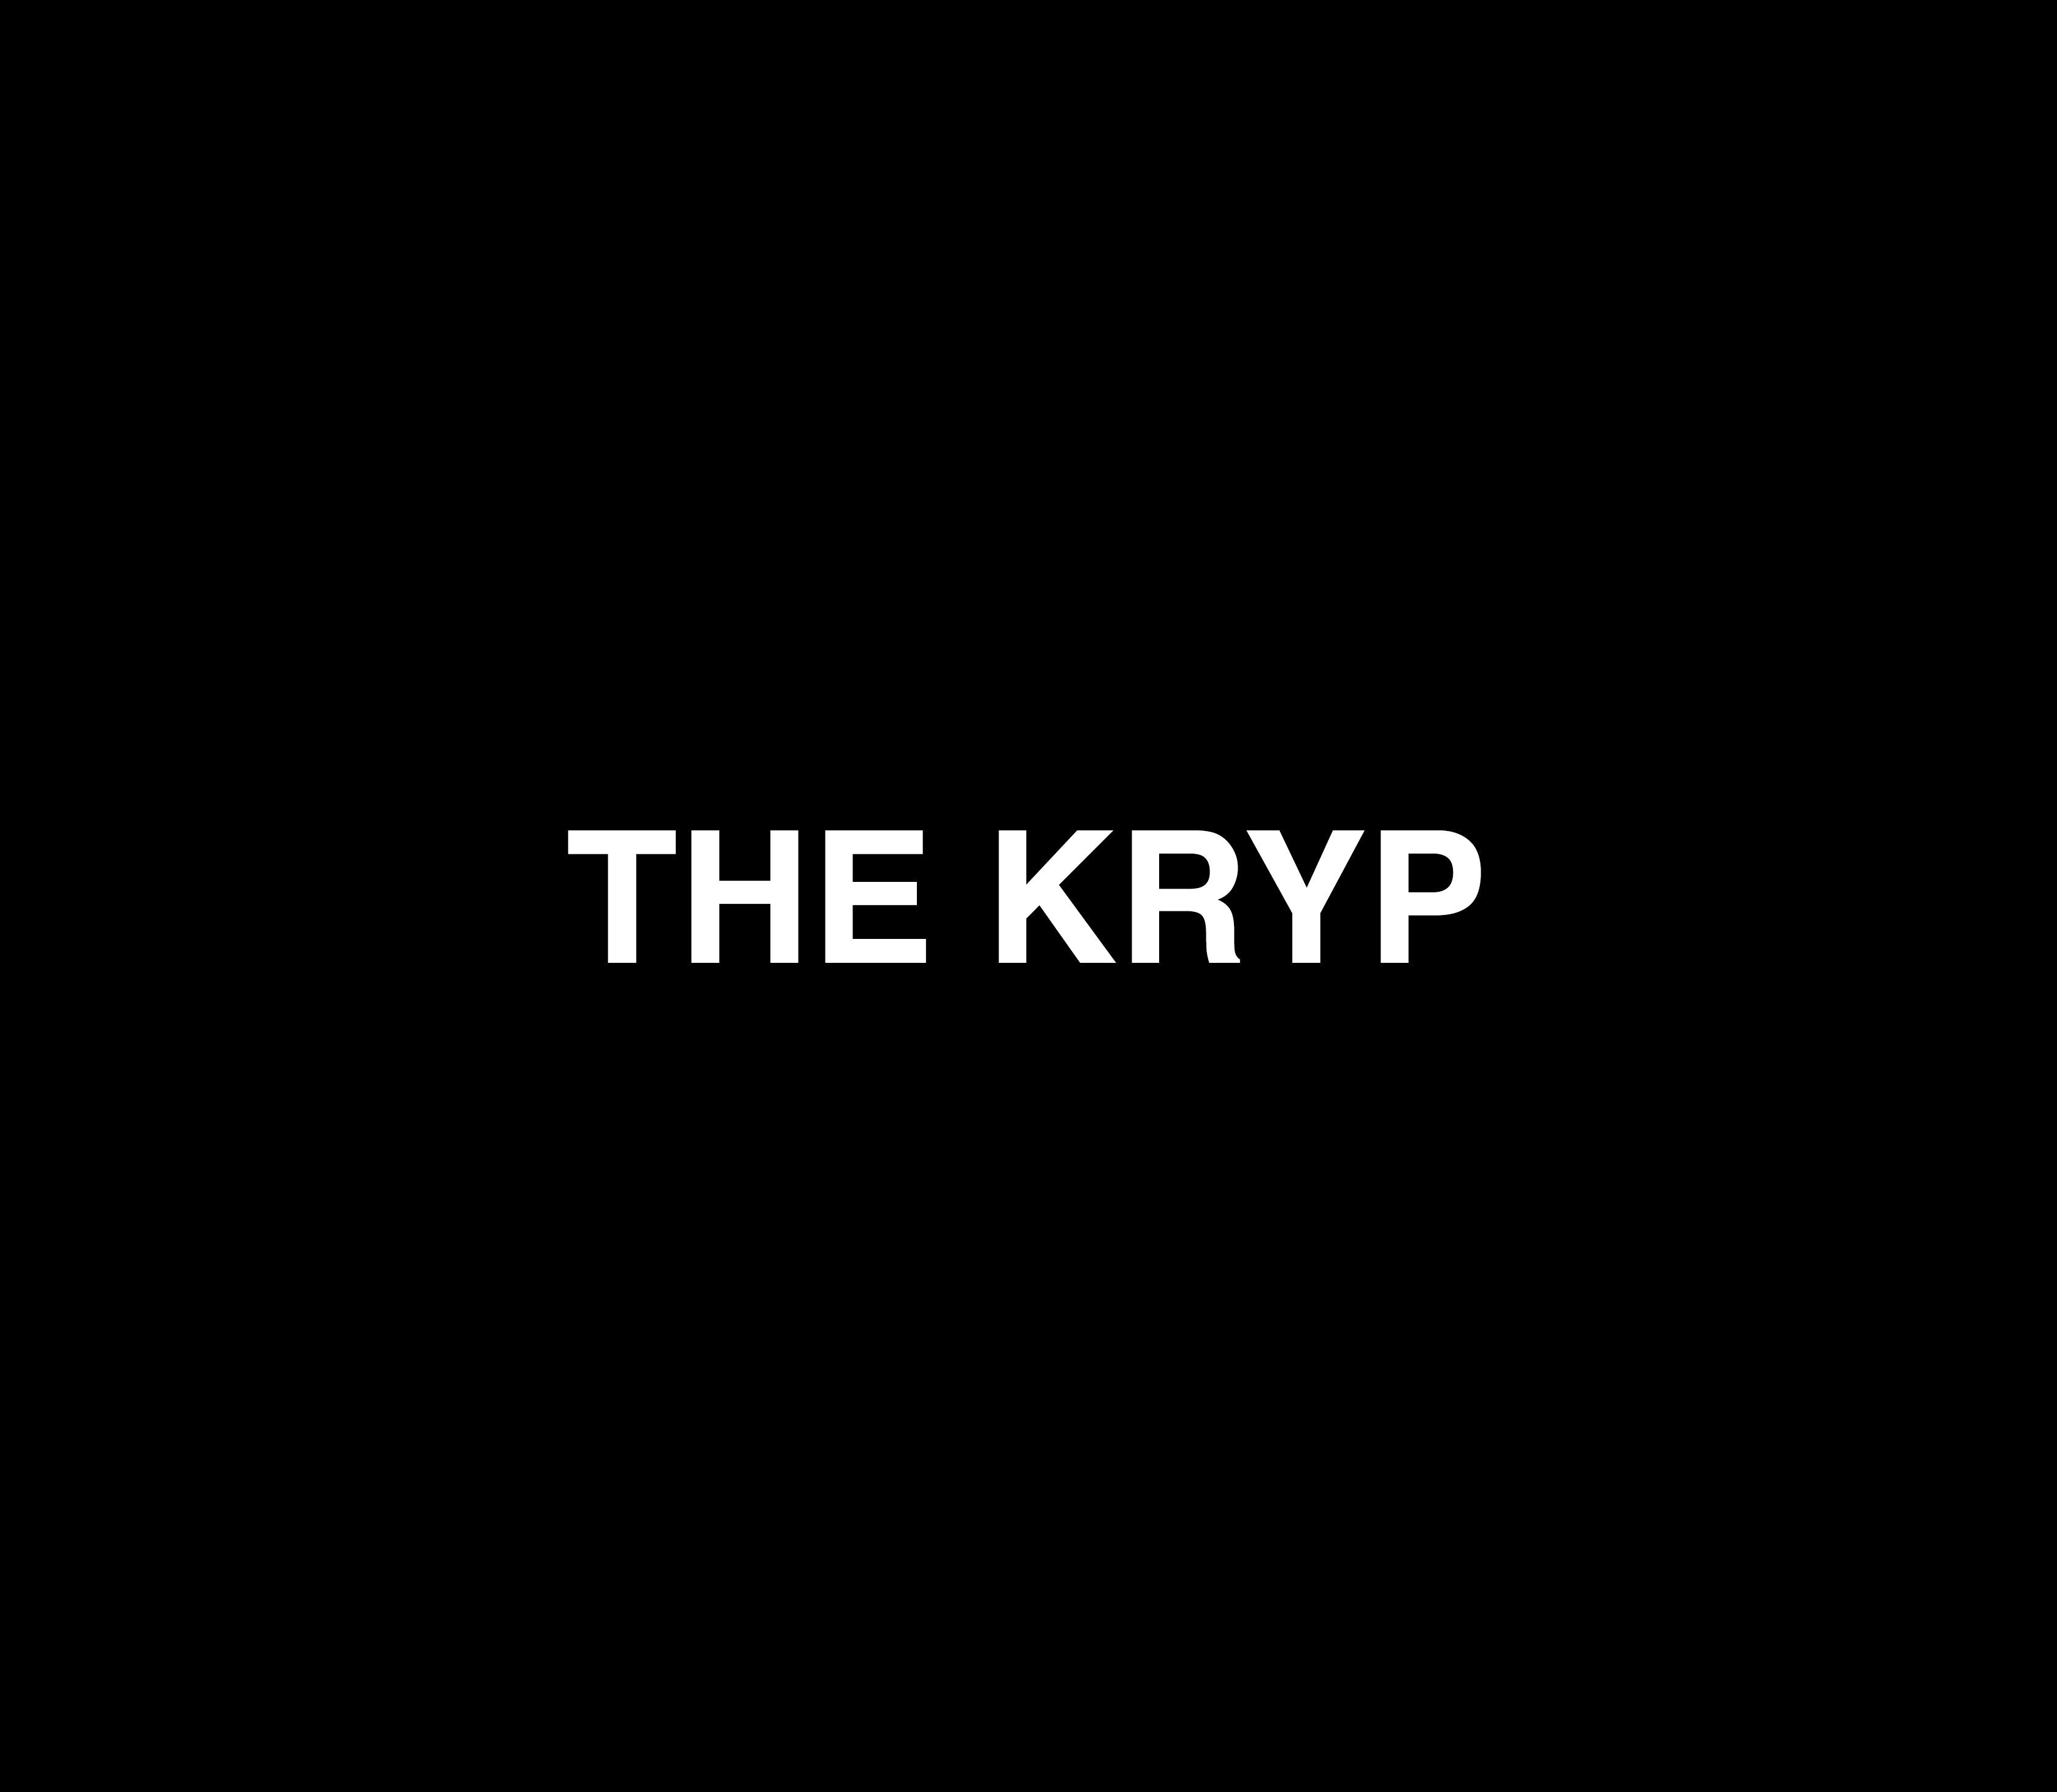 THE KRYP